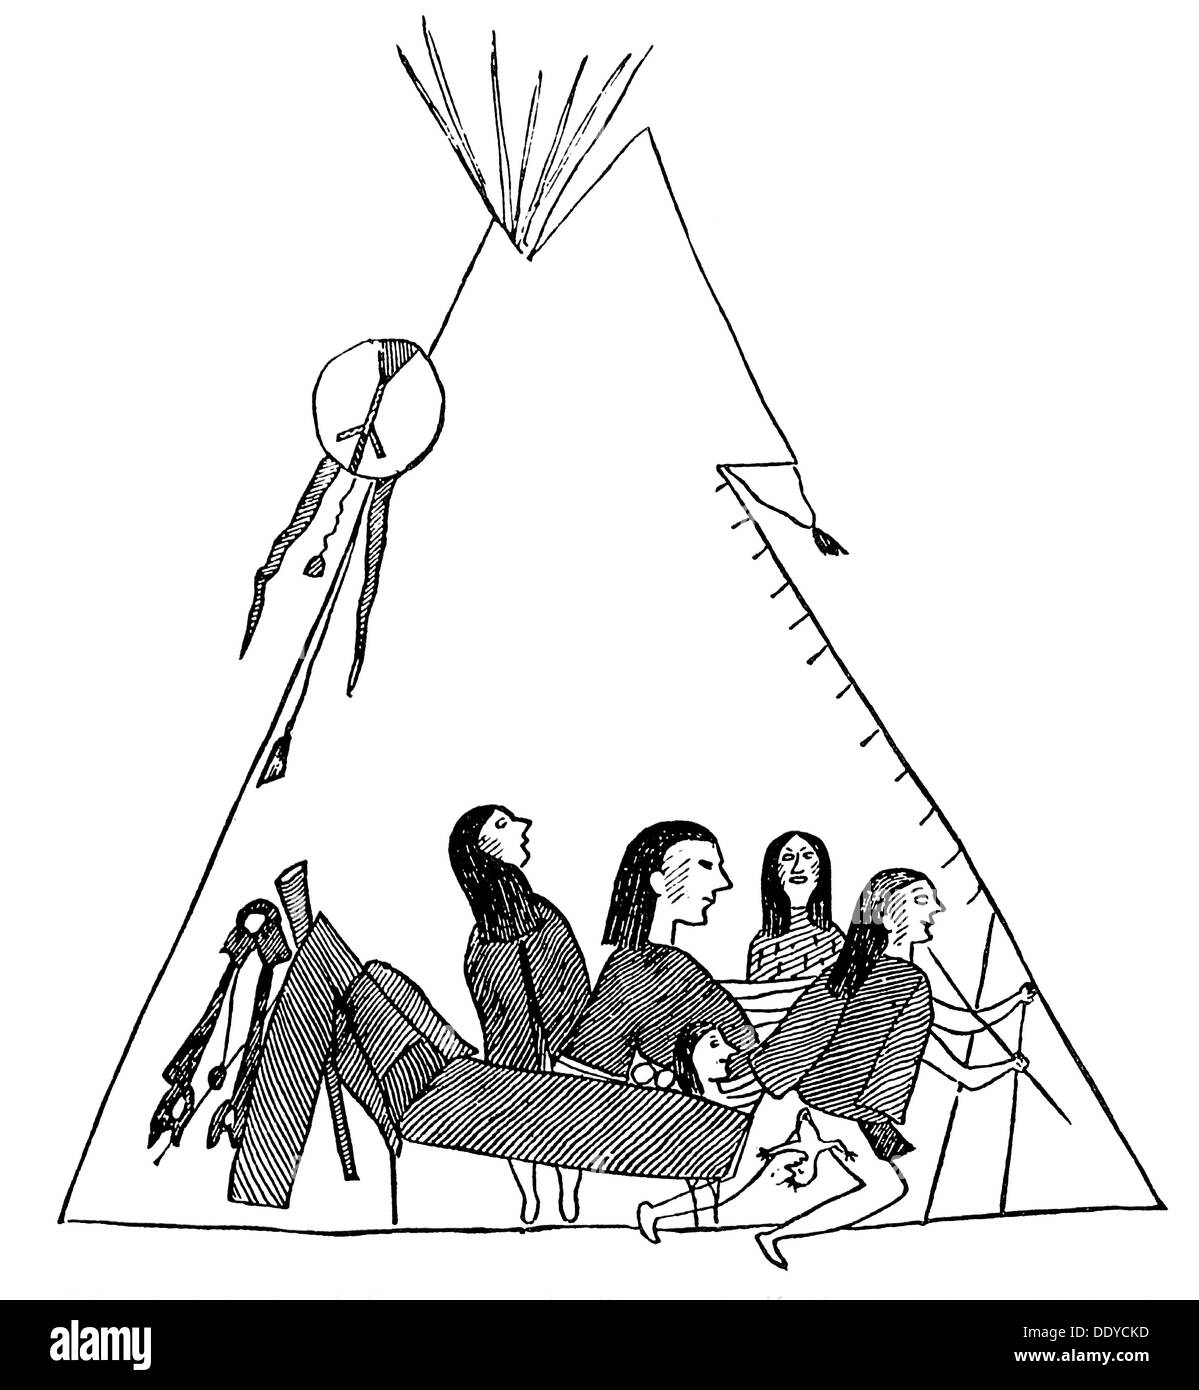 Medizin, Geburt / Gynäkologie, Geburt im Atenten beim Volk der Kiowa, Zeichnung, um 1870, Zusatzrechte-Clearences-nicht vorhanden Stockfoto